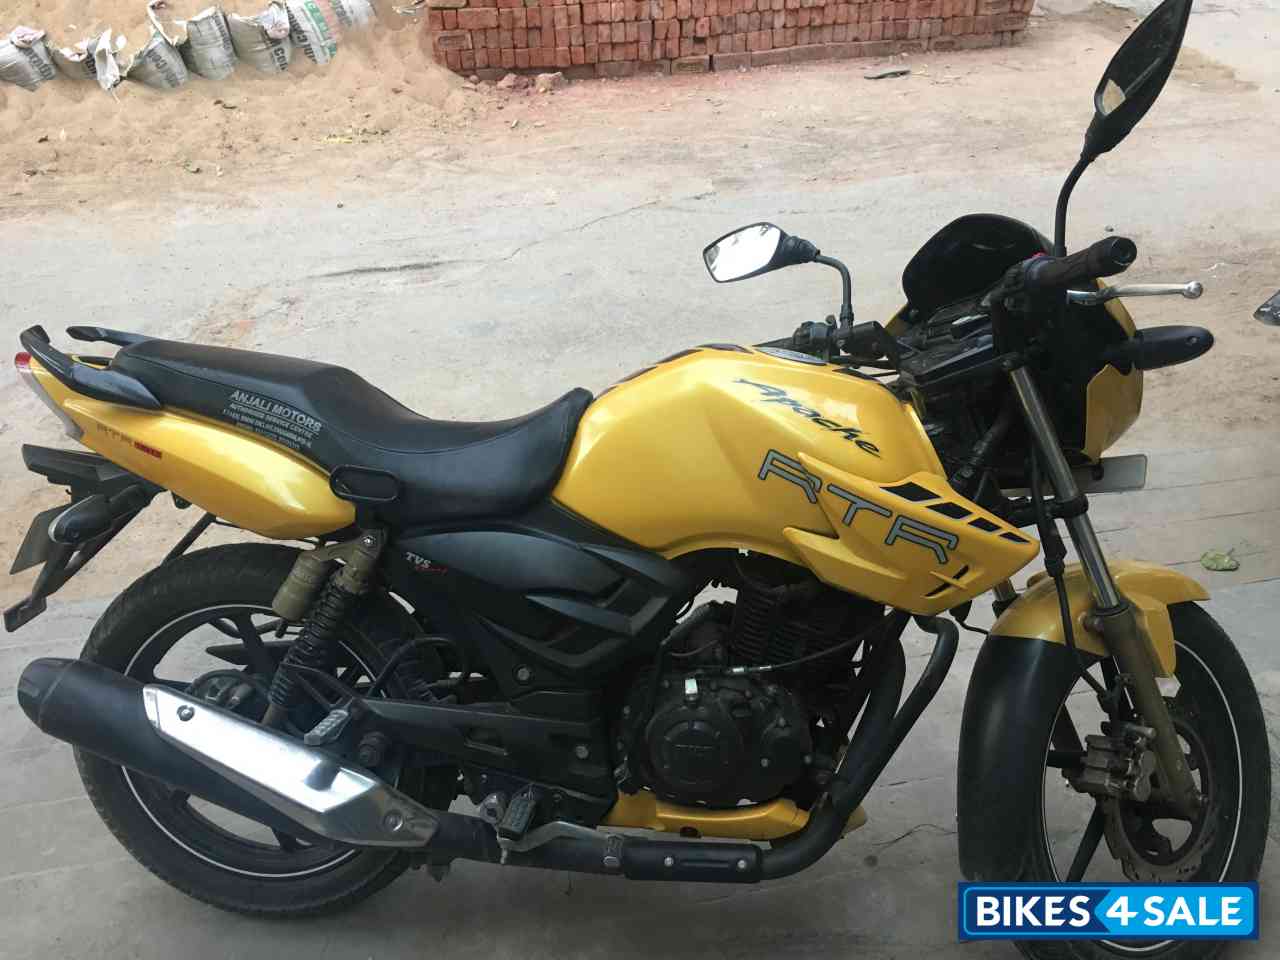 Apache 180 New Model 2019 Price In Bihar